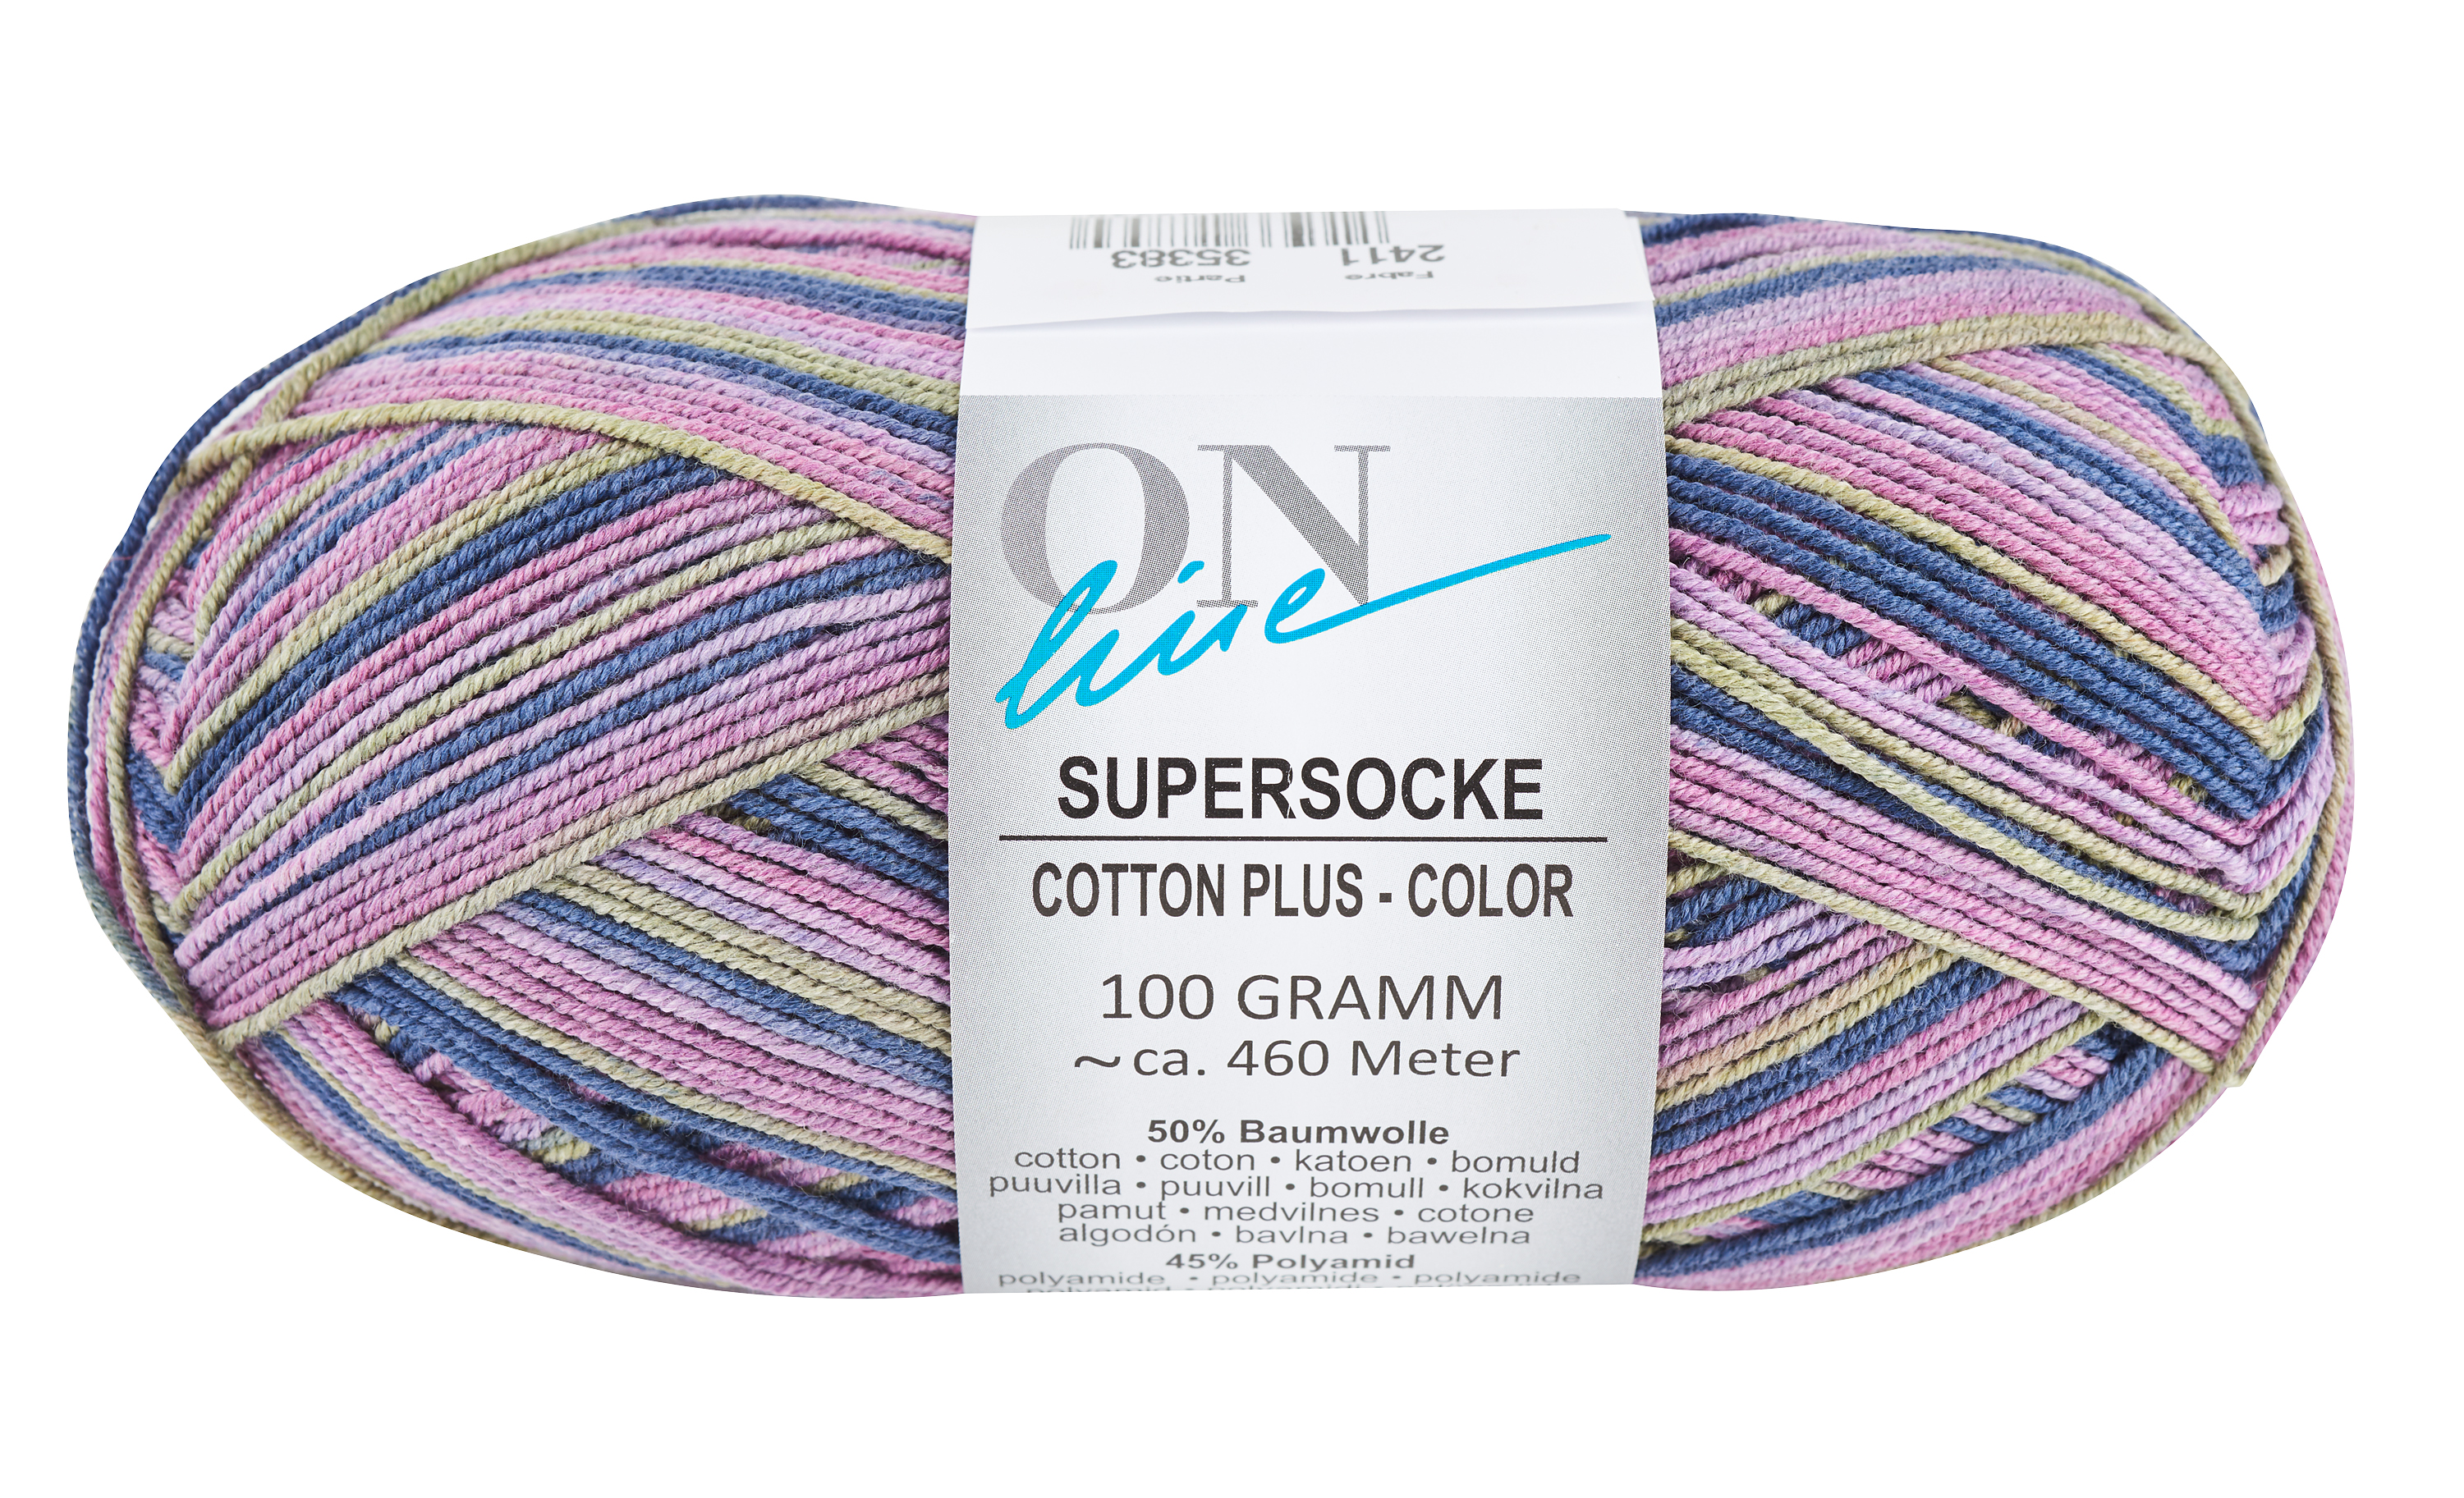 Online supersocke Cotton plus color